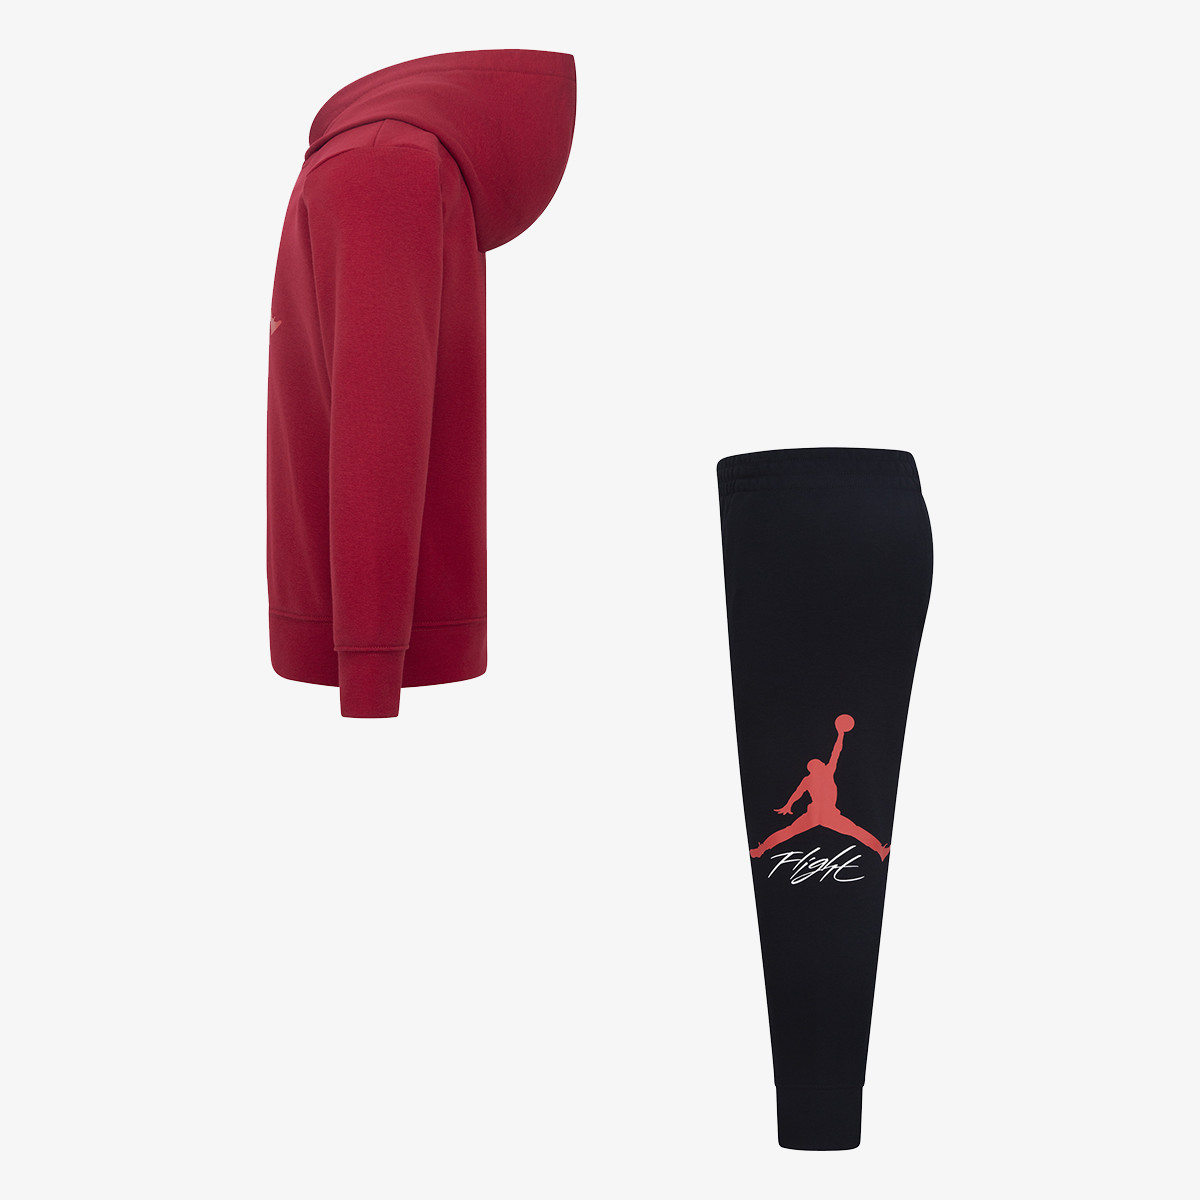 Nike Trenerka Air Jordan 23 